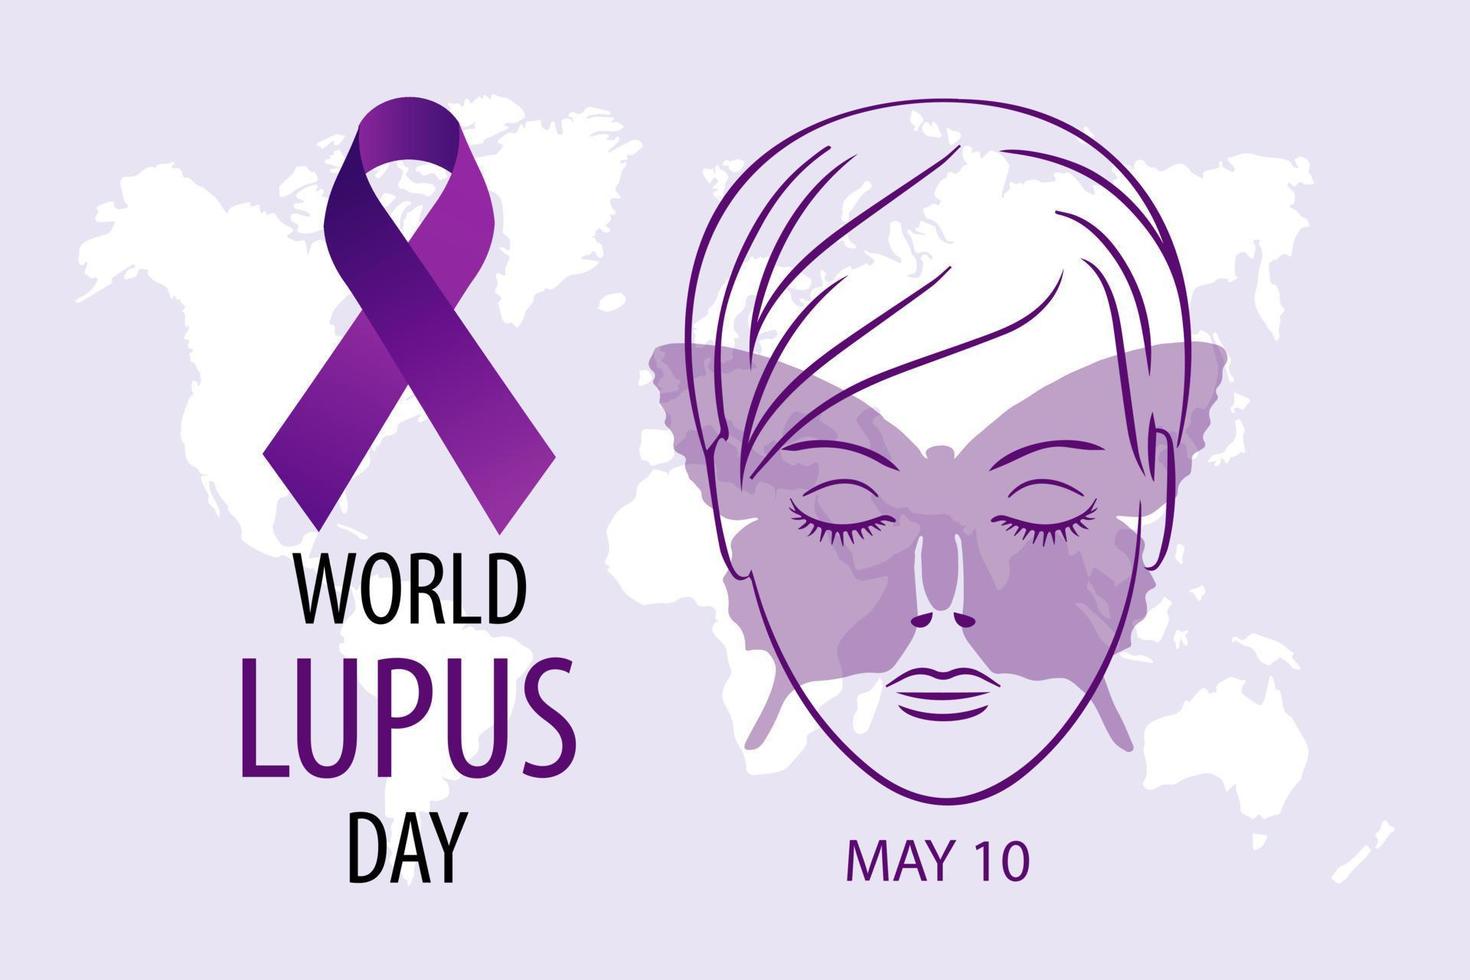 värld lupus dag, Maj 10, baner. kvinnas ansikte med fjäril och lila band. medicinsk affisch, vektor